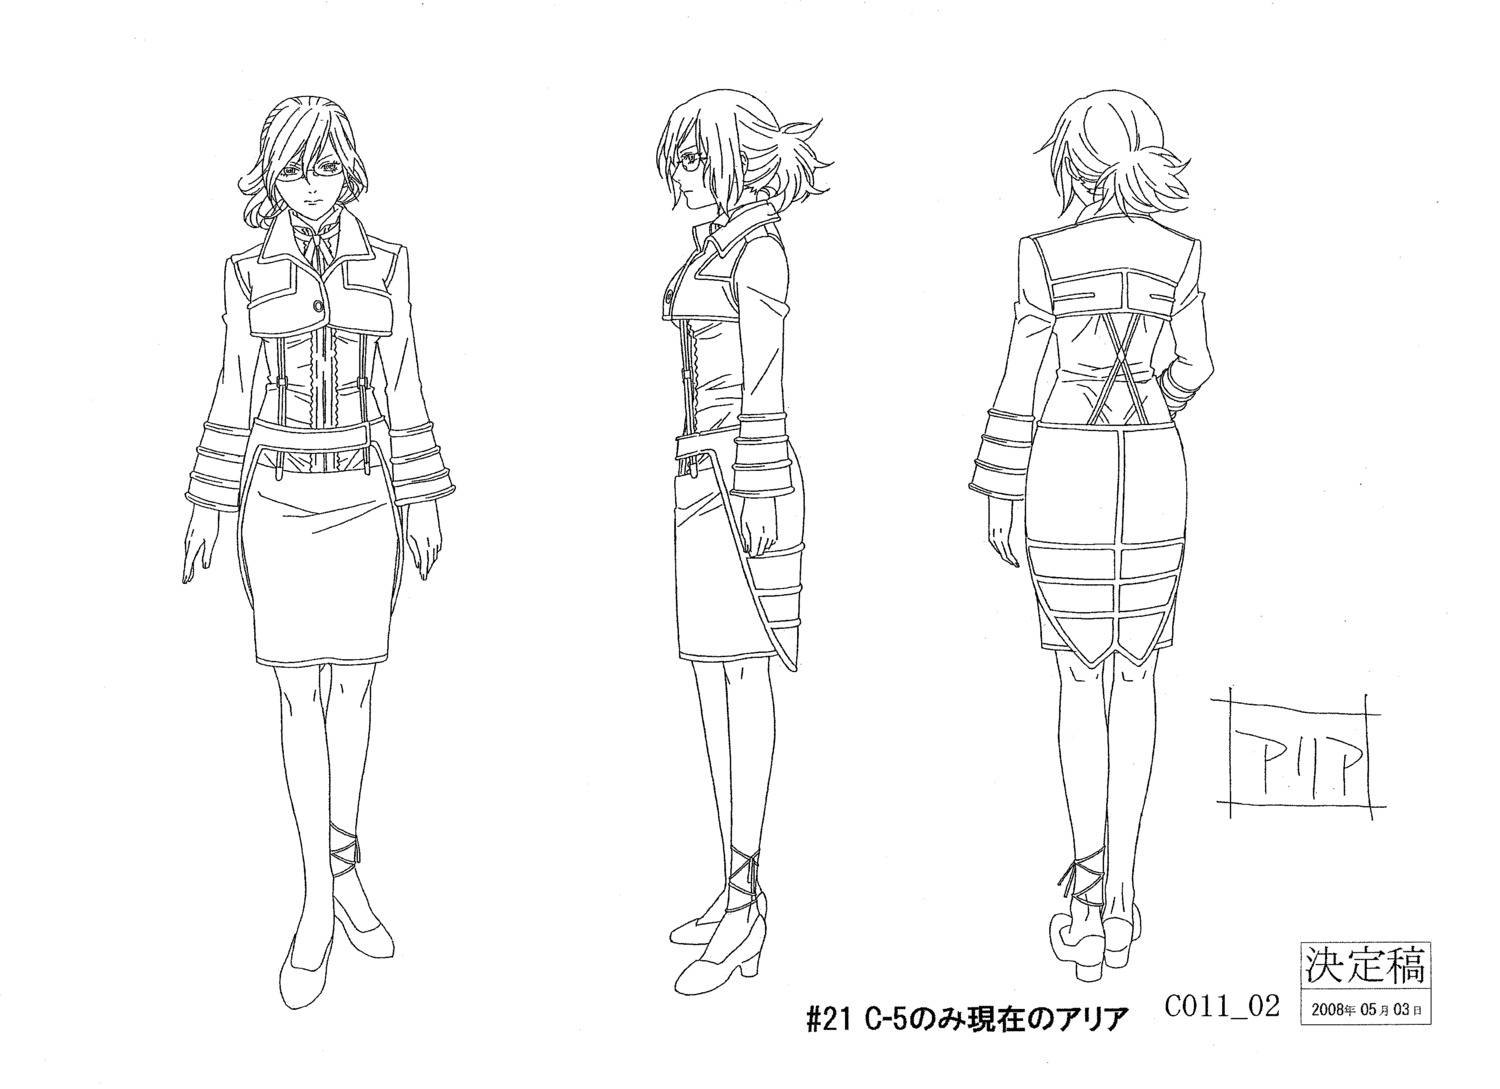 aria_link character_design heels line_art megane monochrome shiba_minako tegami_bachi tegami_bachi_settei uniform